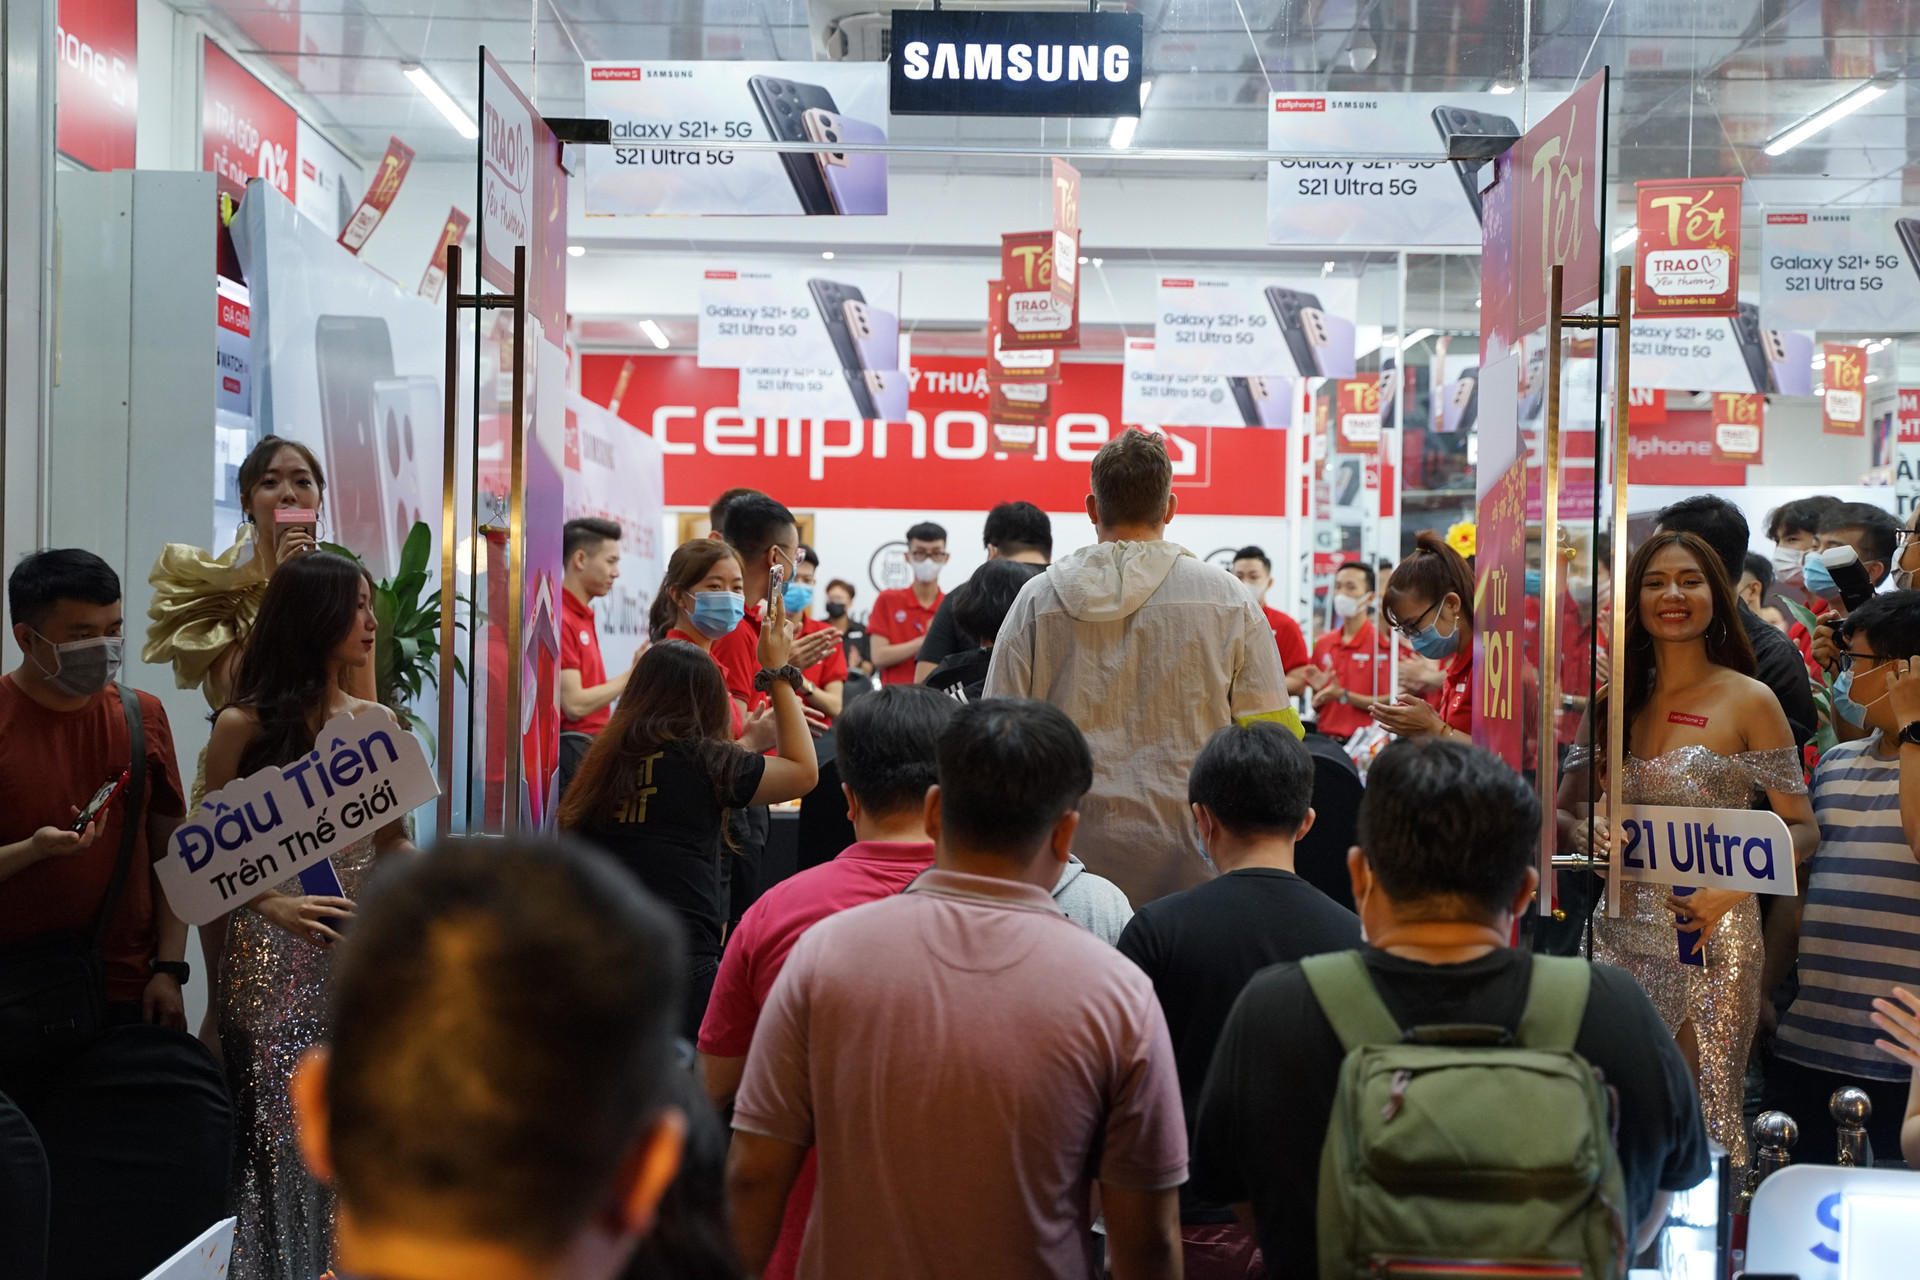 Việt Nam là quốc gia mở bán Galaxy S21 series đầu tiên trên thế giới - Ảnh 1.